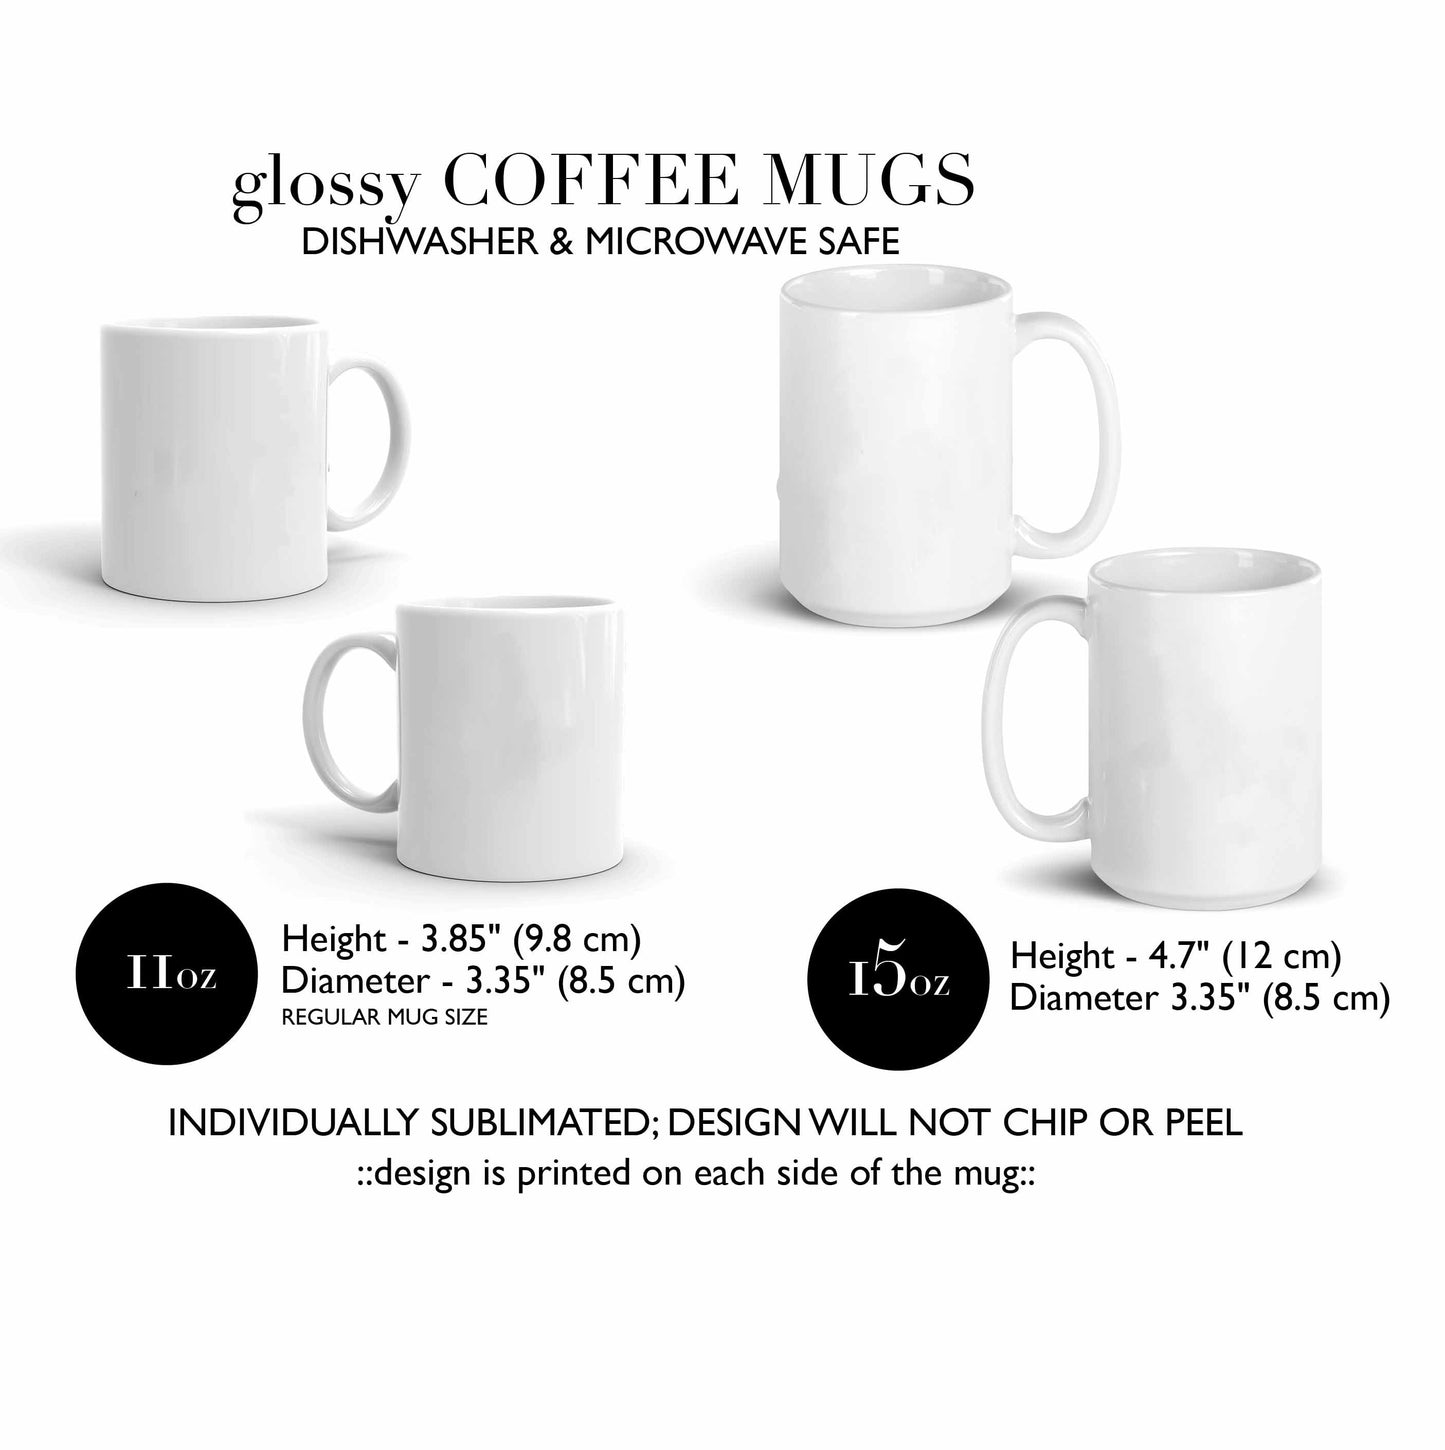 CUTE Teacher Mug | Teacher Gift | Birthday Gift for Teacher | Christmas Gift for Teacher | Favorite Mug | Coffee Mug | 15oz mug | 11oz mug